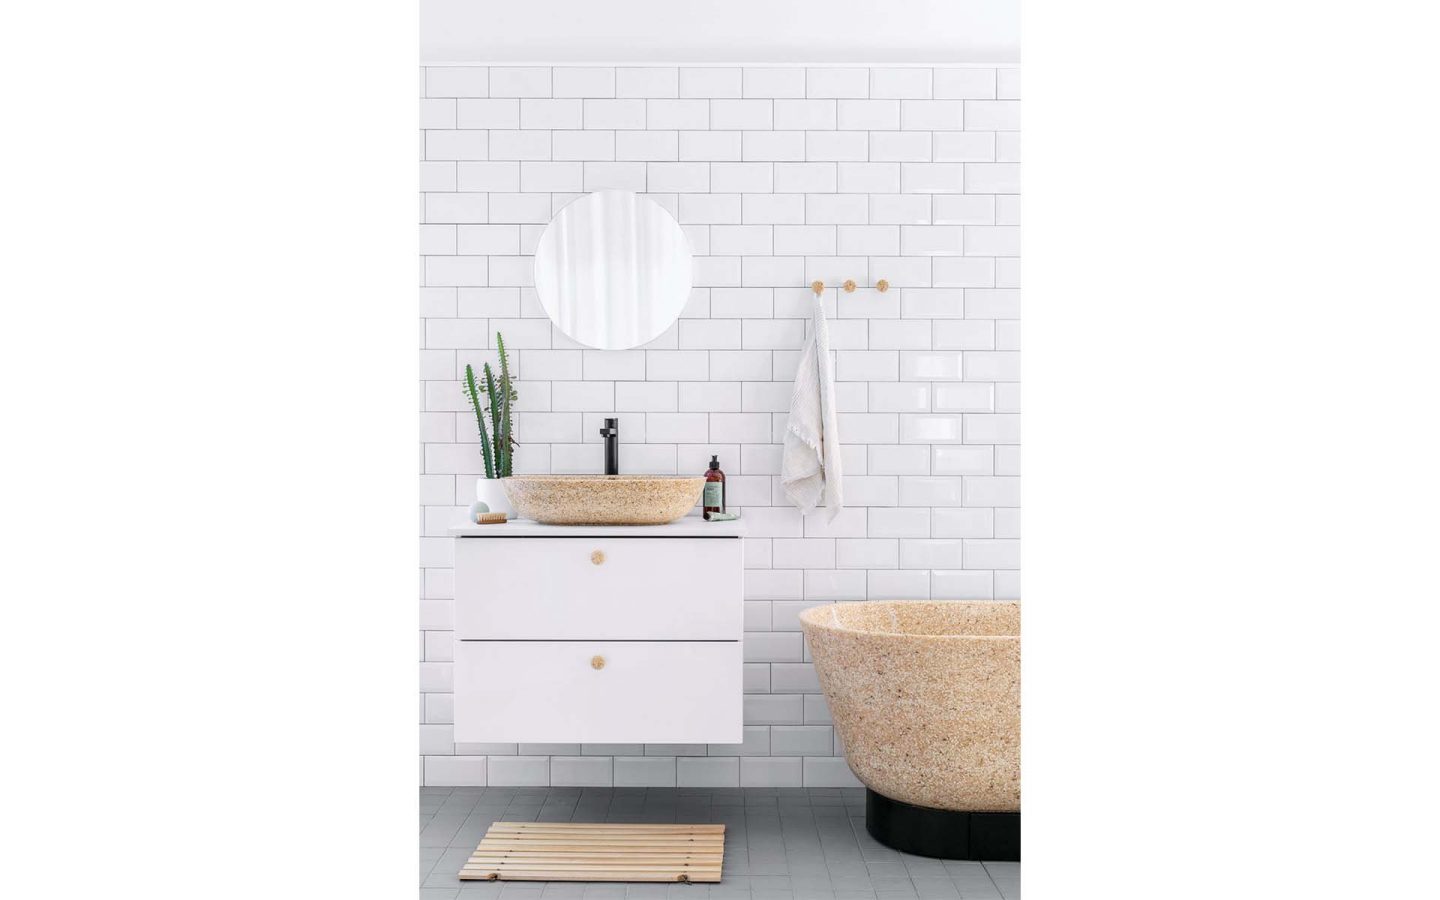 Das finnische Unternehmen Woodio revolutioniert mit seinen Waschbecken, Wannen und WCs aus Holz das Badezimmer. Natürlich zu 100 Prozent wasserdicht!  Foto: Woodio